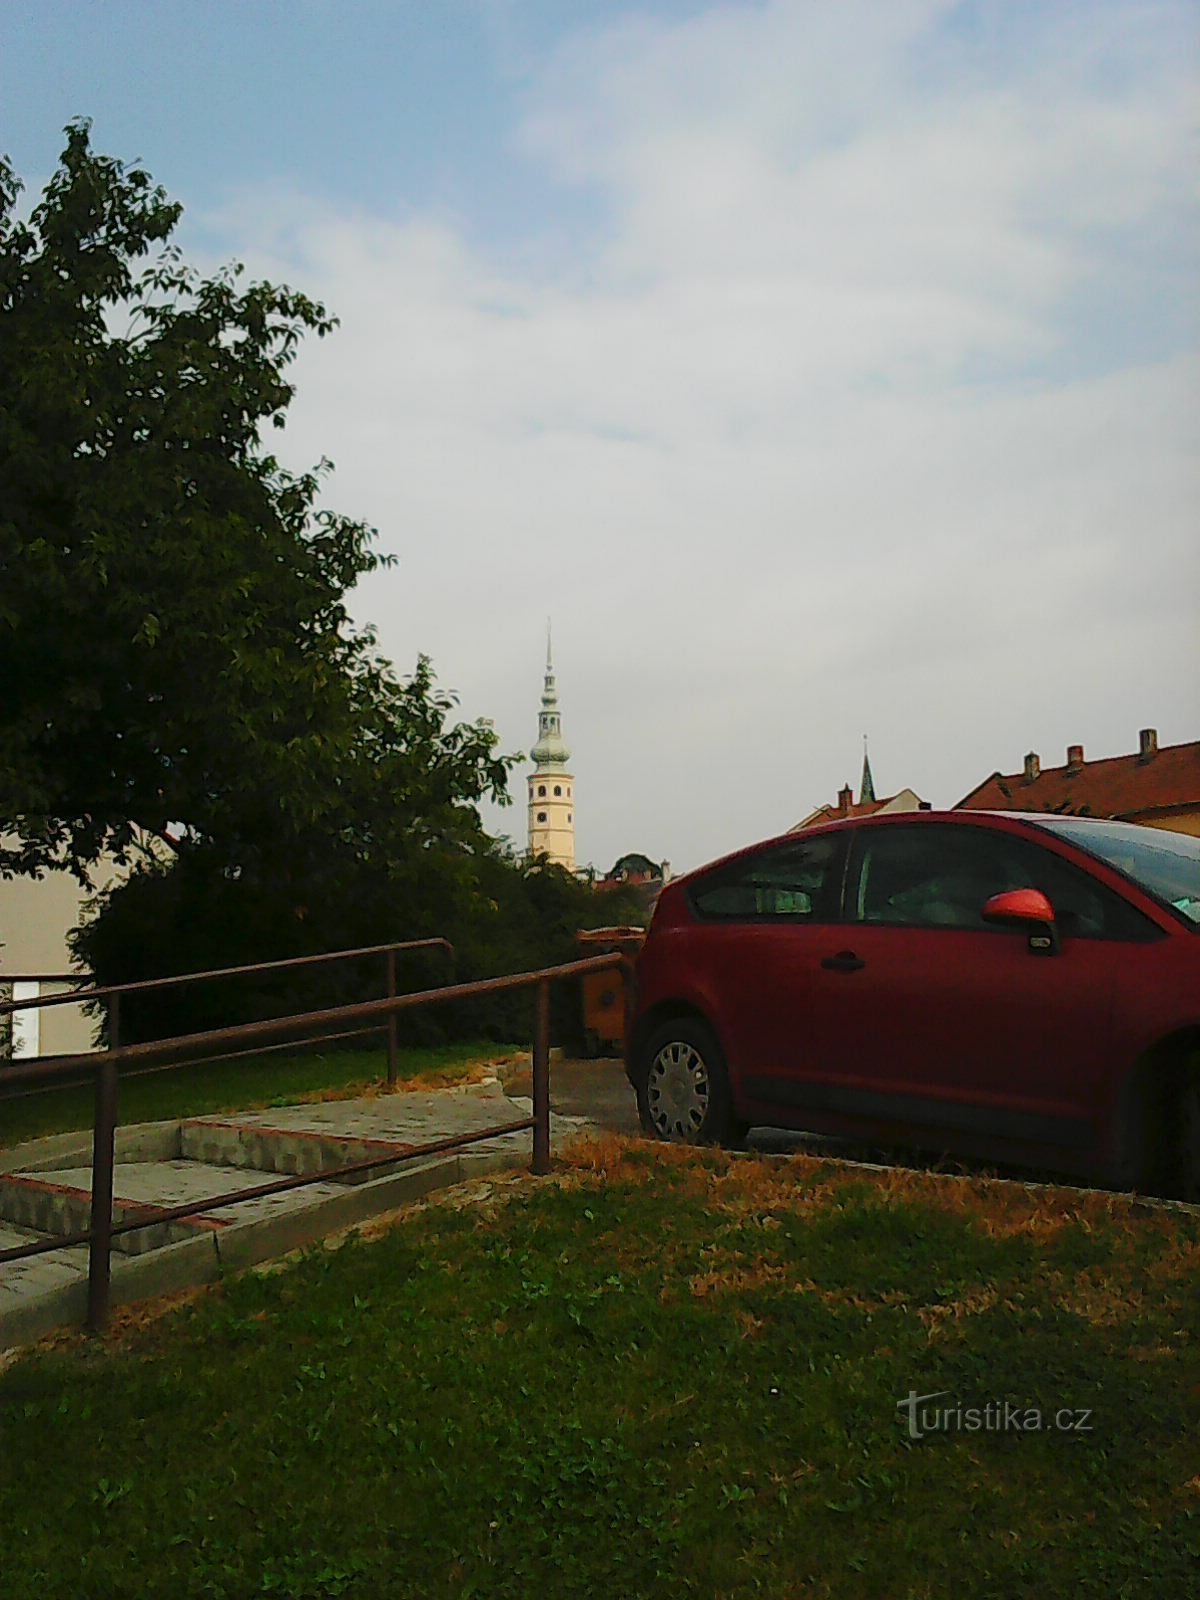 Turnul castelului Tovačovské vizibil de la distanță - punctul meu de referință principal :)